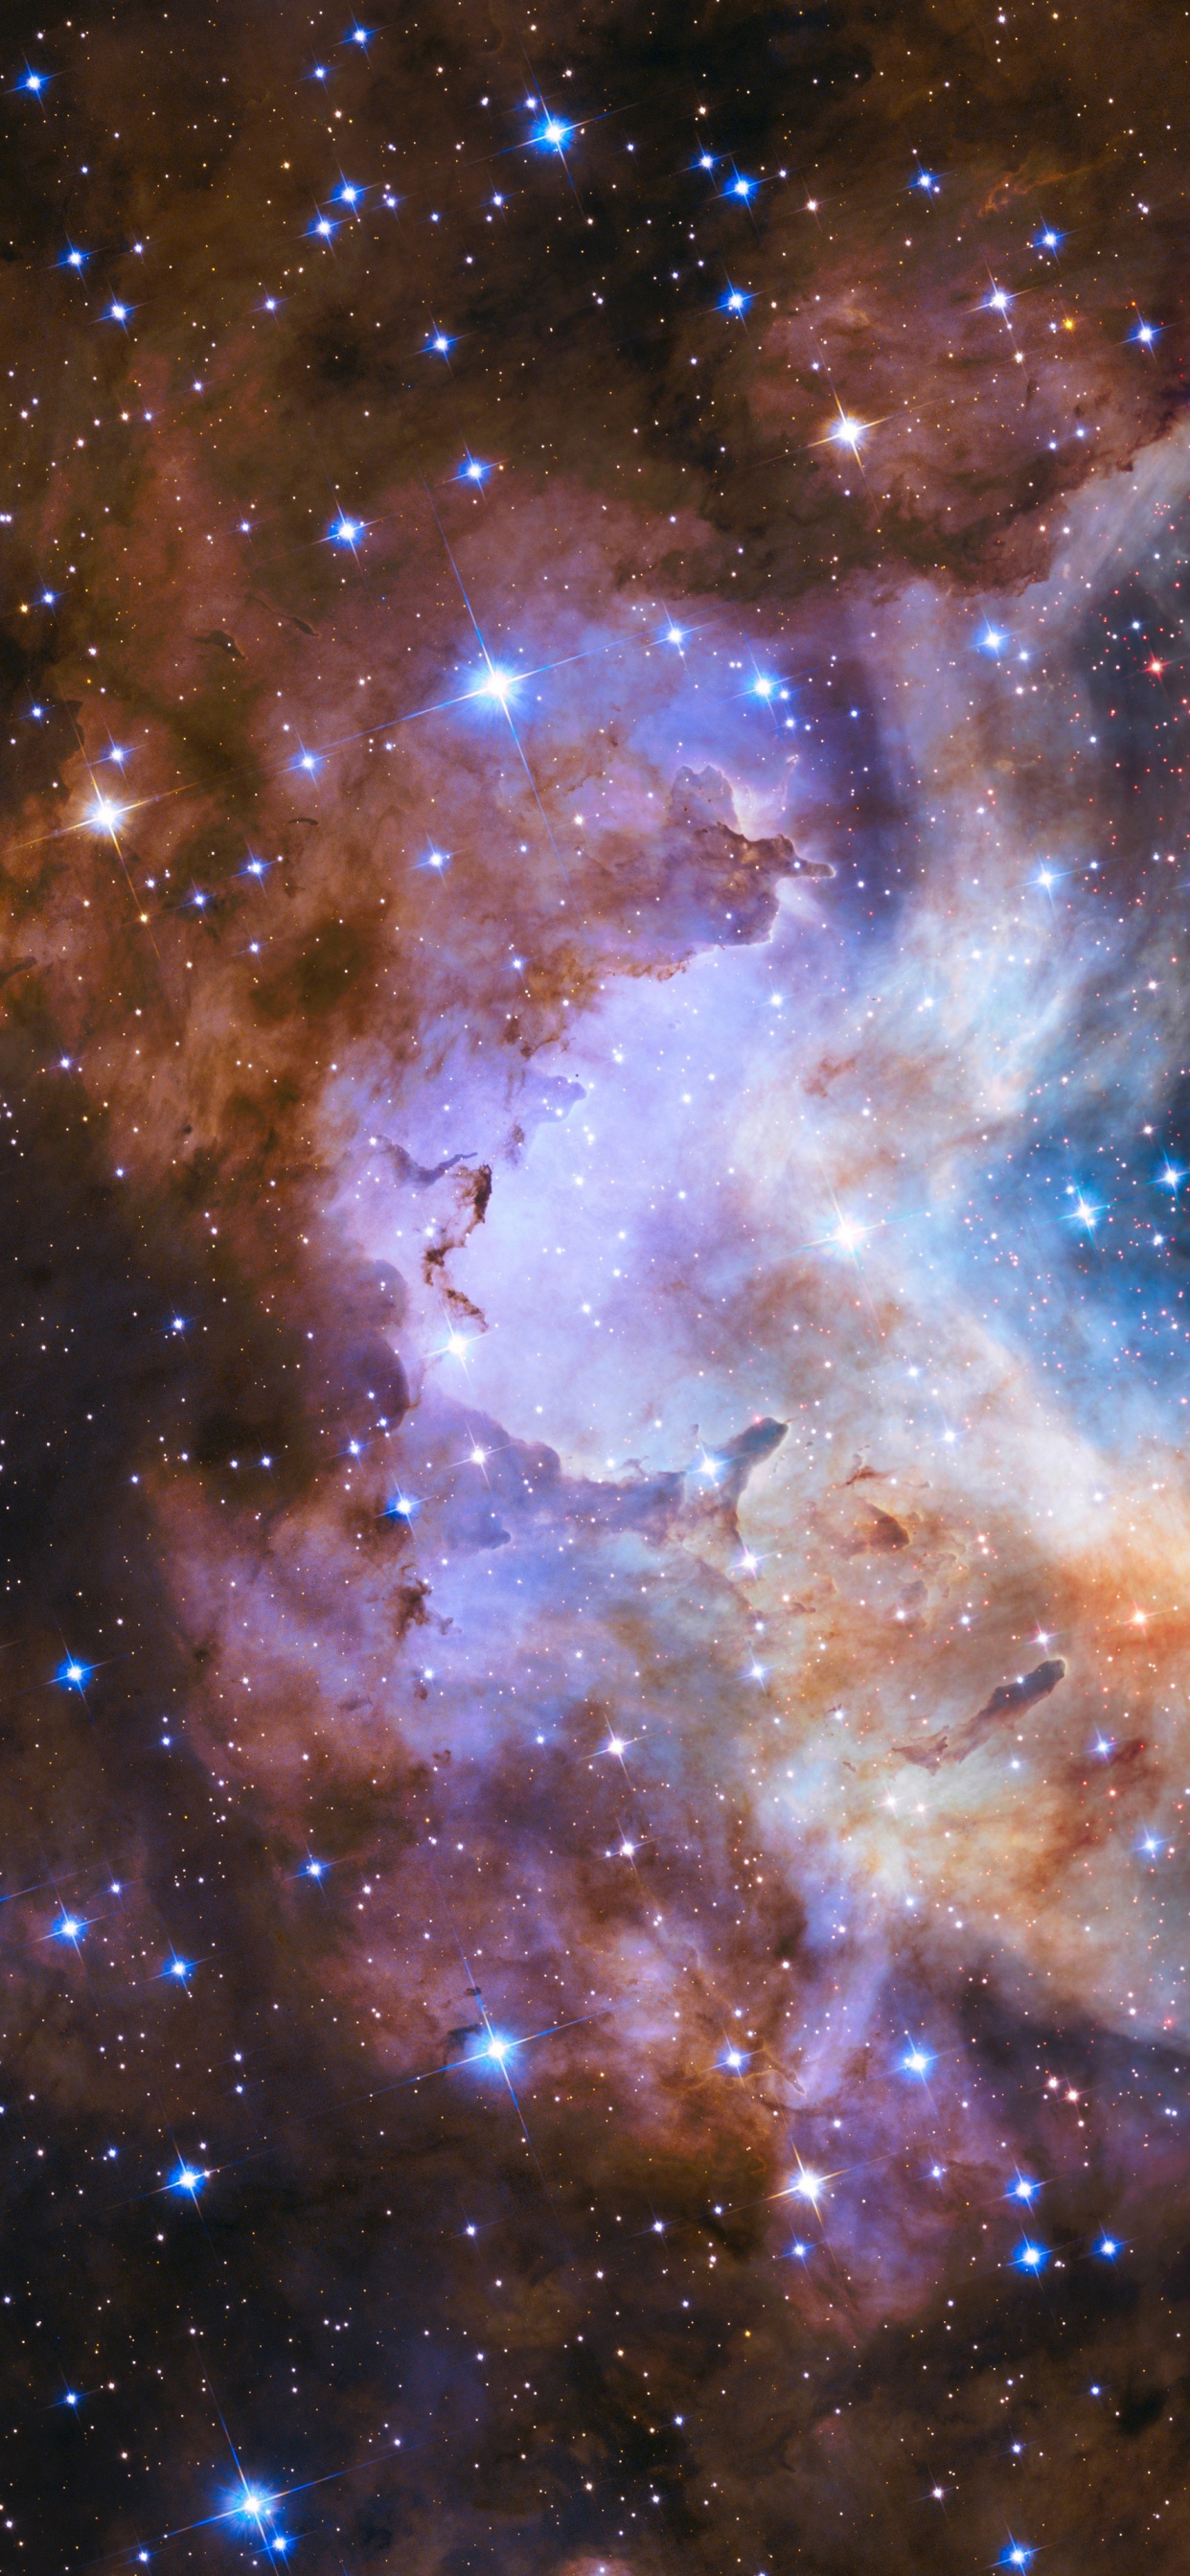 明星, 哈勃太空望远镜, 星团, 宇宙, 天文学 壁纸 1242x2688 允许